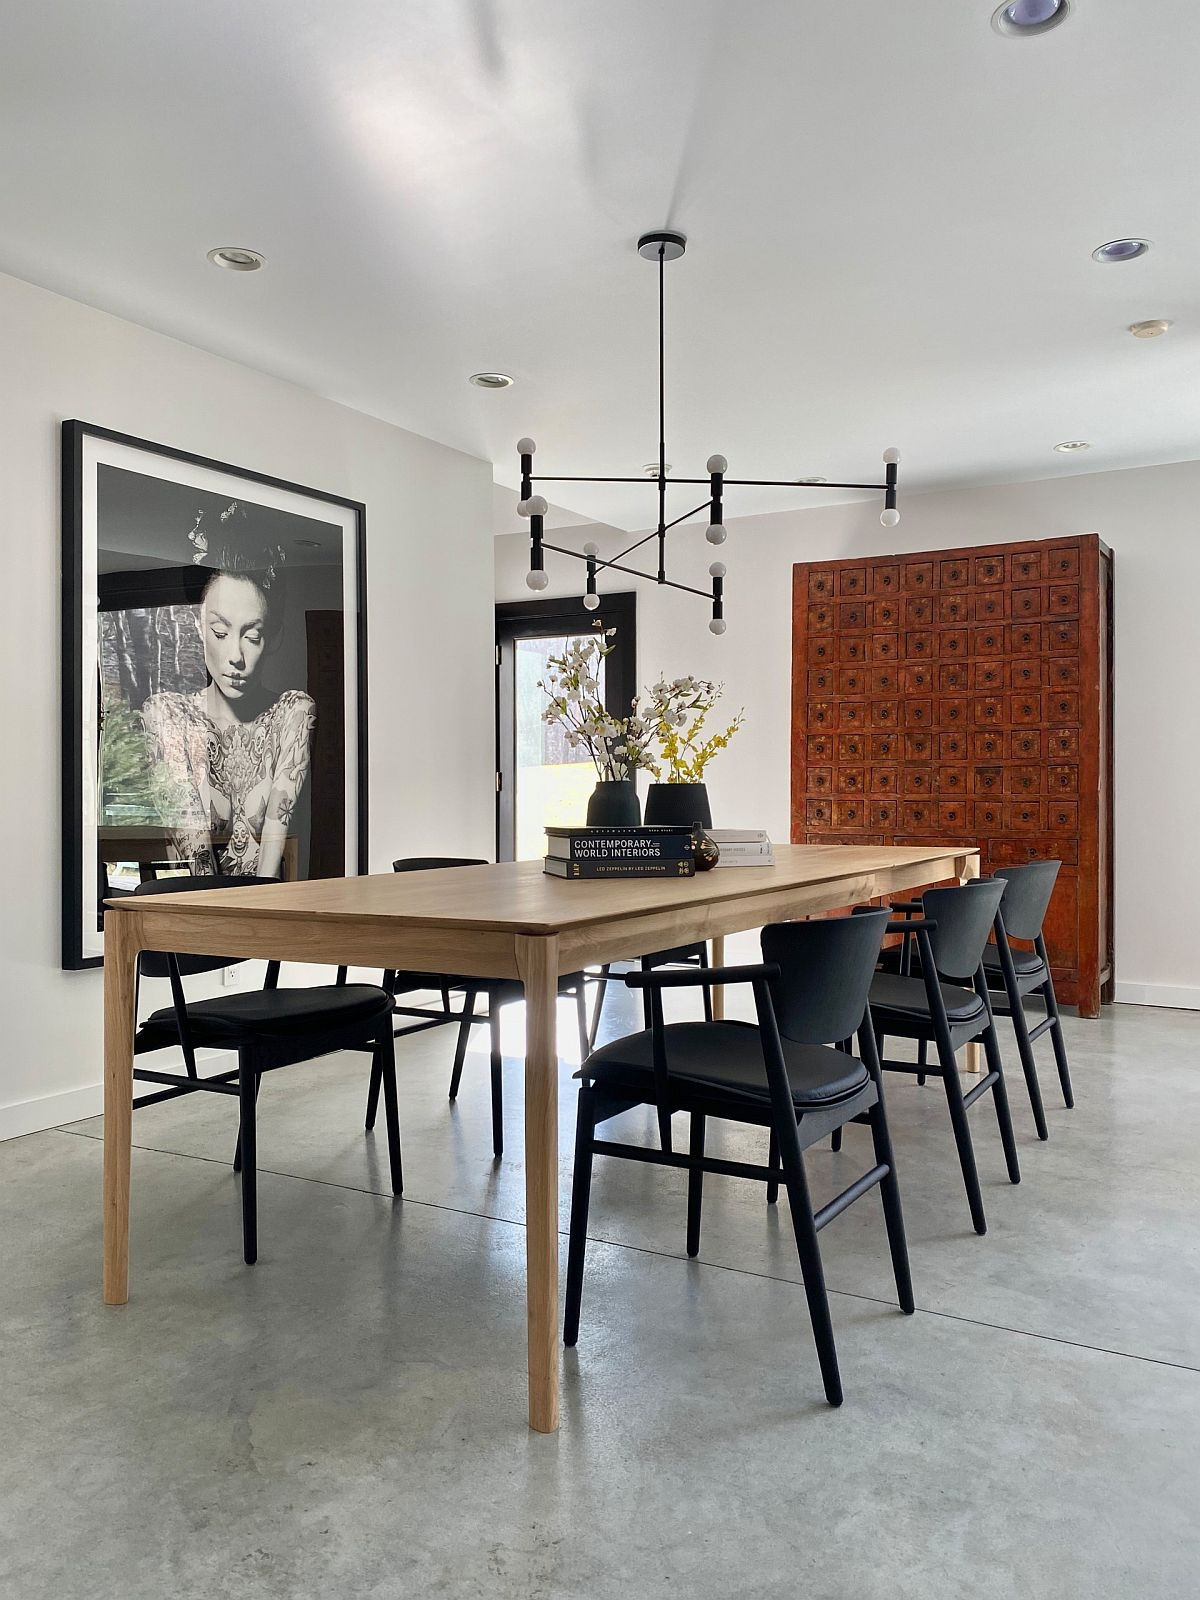 Tạo một sắc thái riêng cho không gian ăn uống nhà mình bằng những tác phẩm nghệ thuật treo tường.